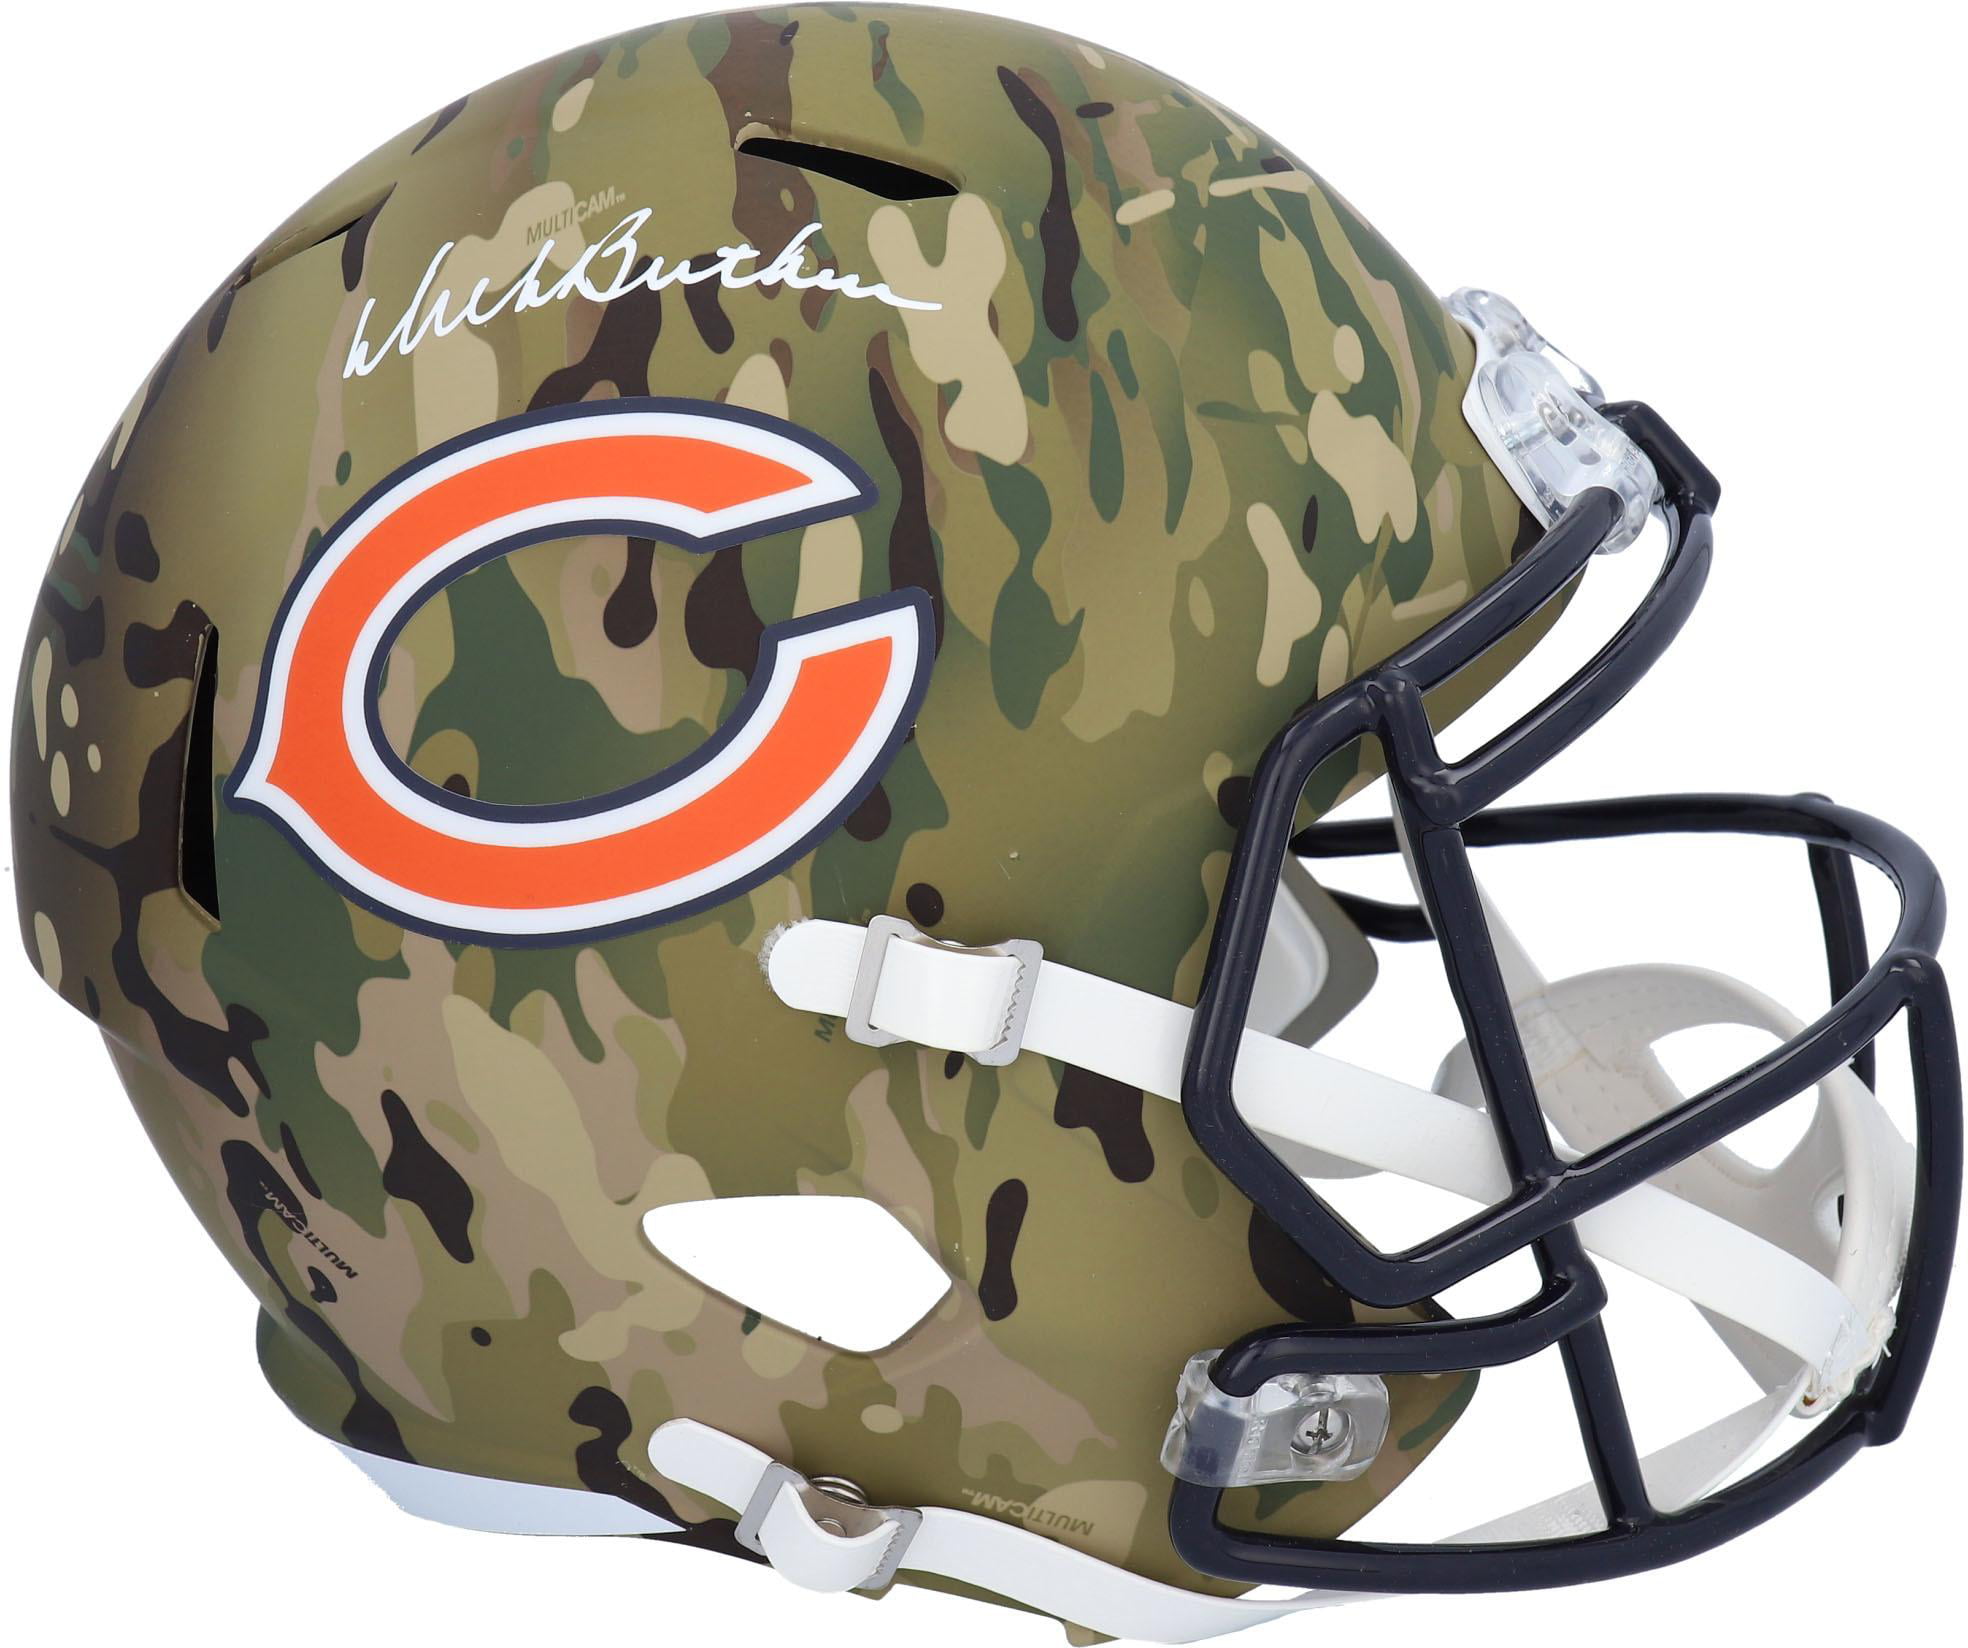 Riddell Chicago Bears Officially Licensed Speed Full Size Replica Football Helmet 